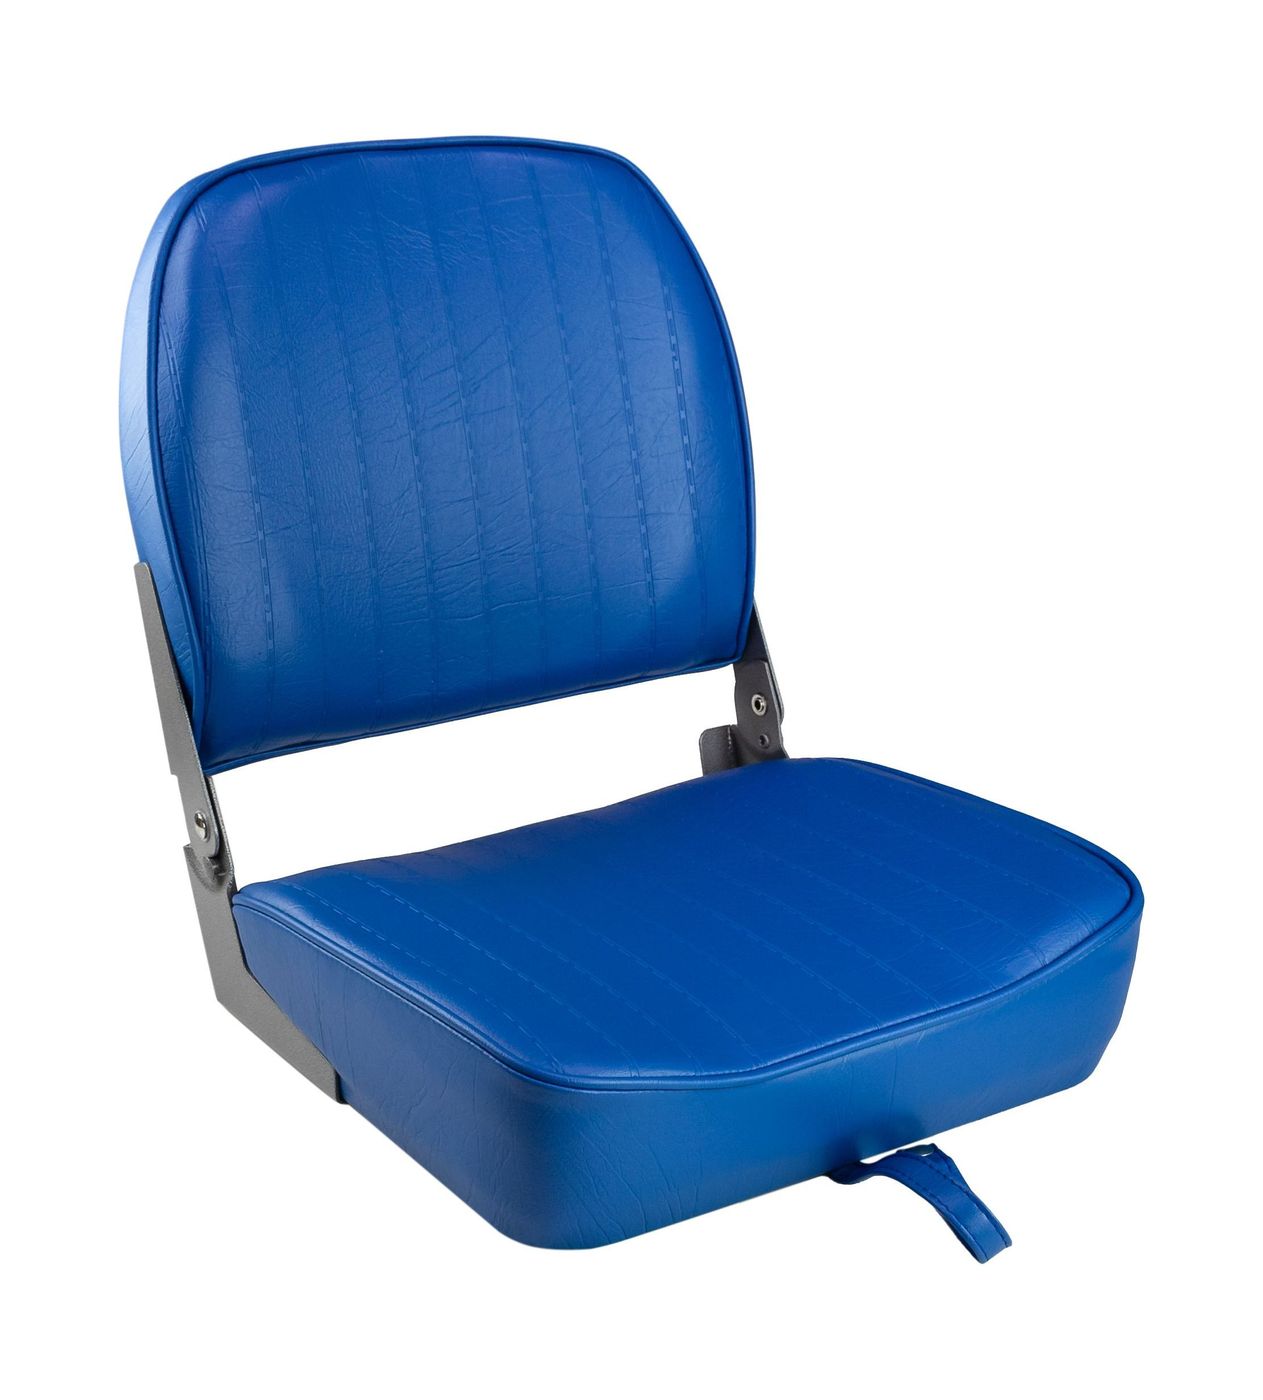 Кресло складное мягкое ECONOMY с низкой спинкой, цвет синий 1040621 кресло складное мягкое economy с низкой спинкой обивка камуфляжная ткань 1040627